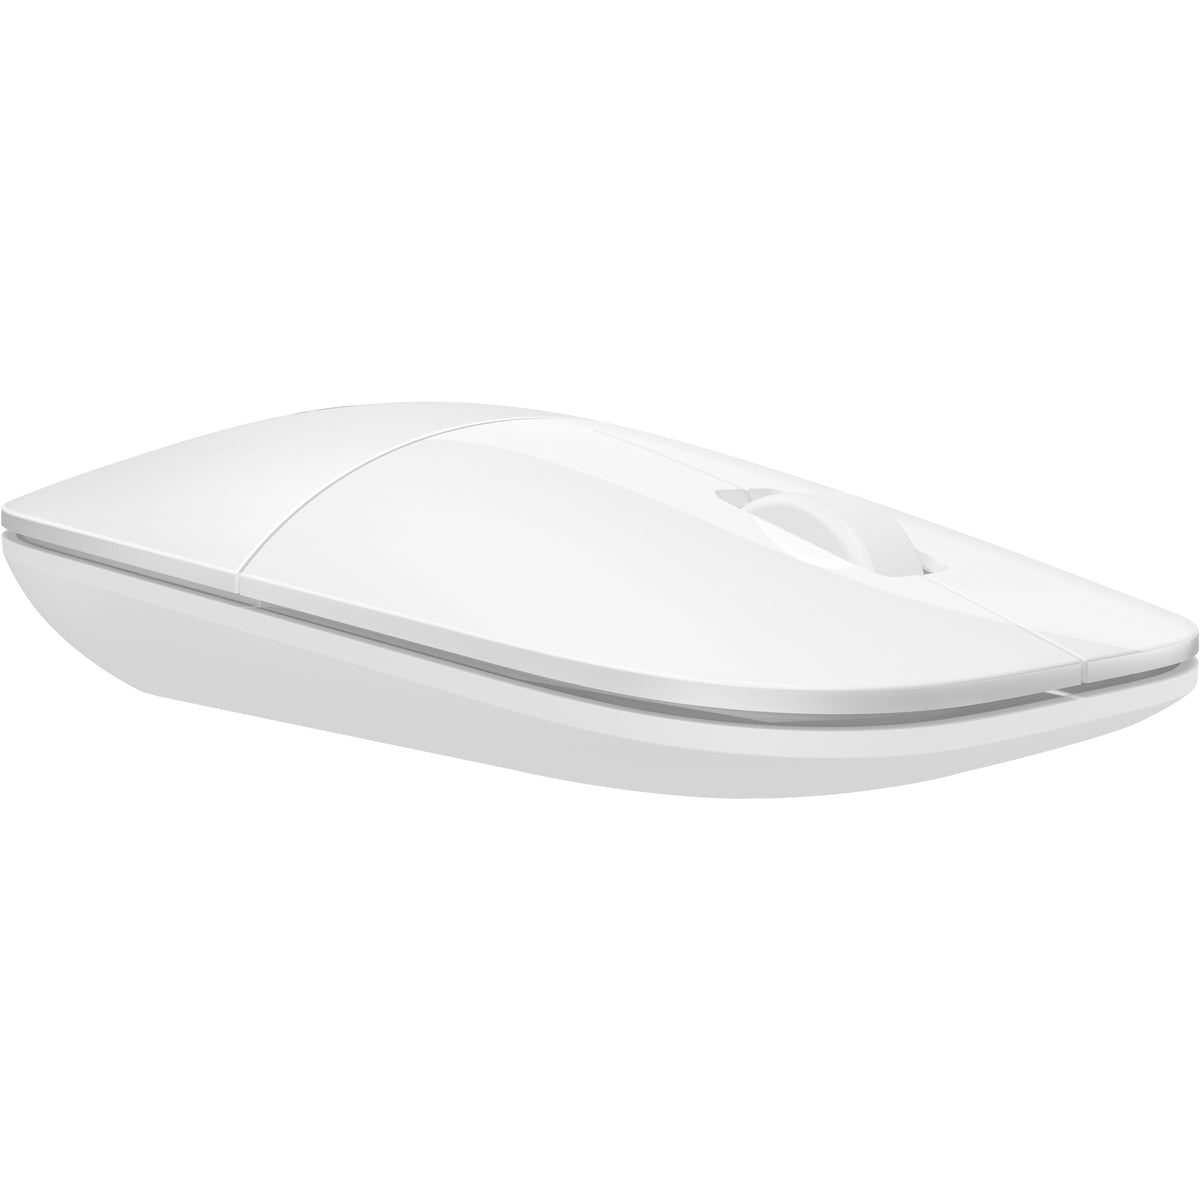 Bezdrátová myš HP Z3700 (V0L80AA)